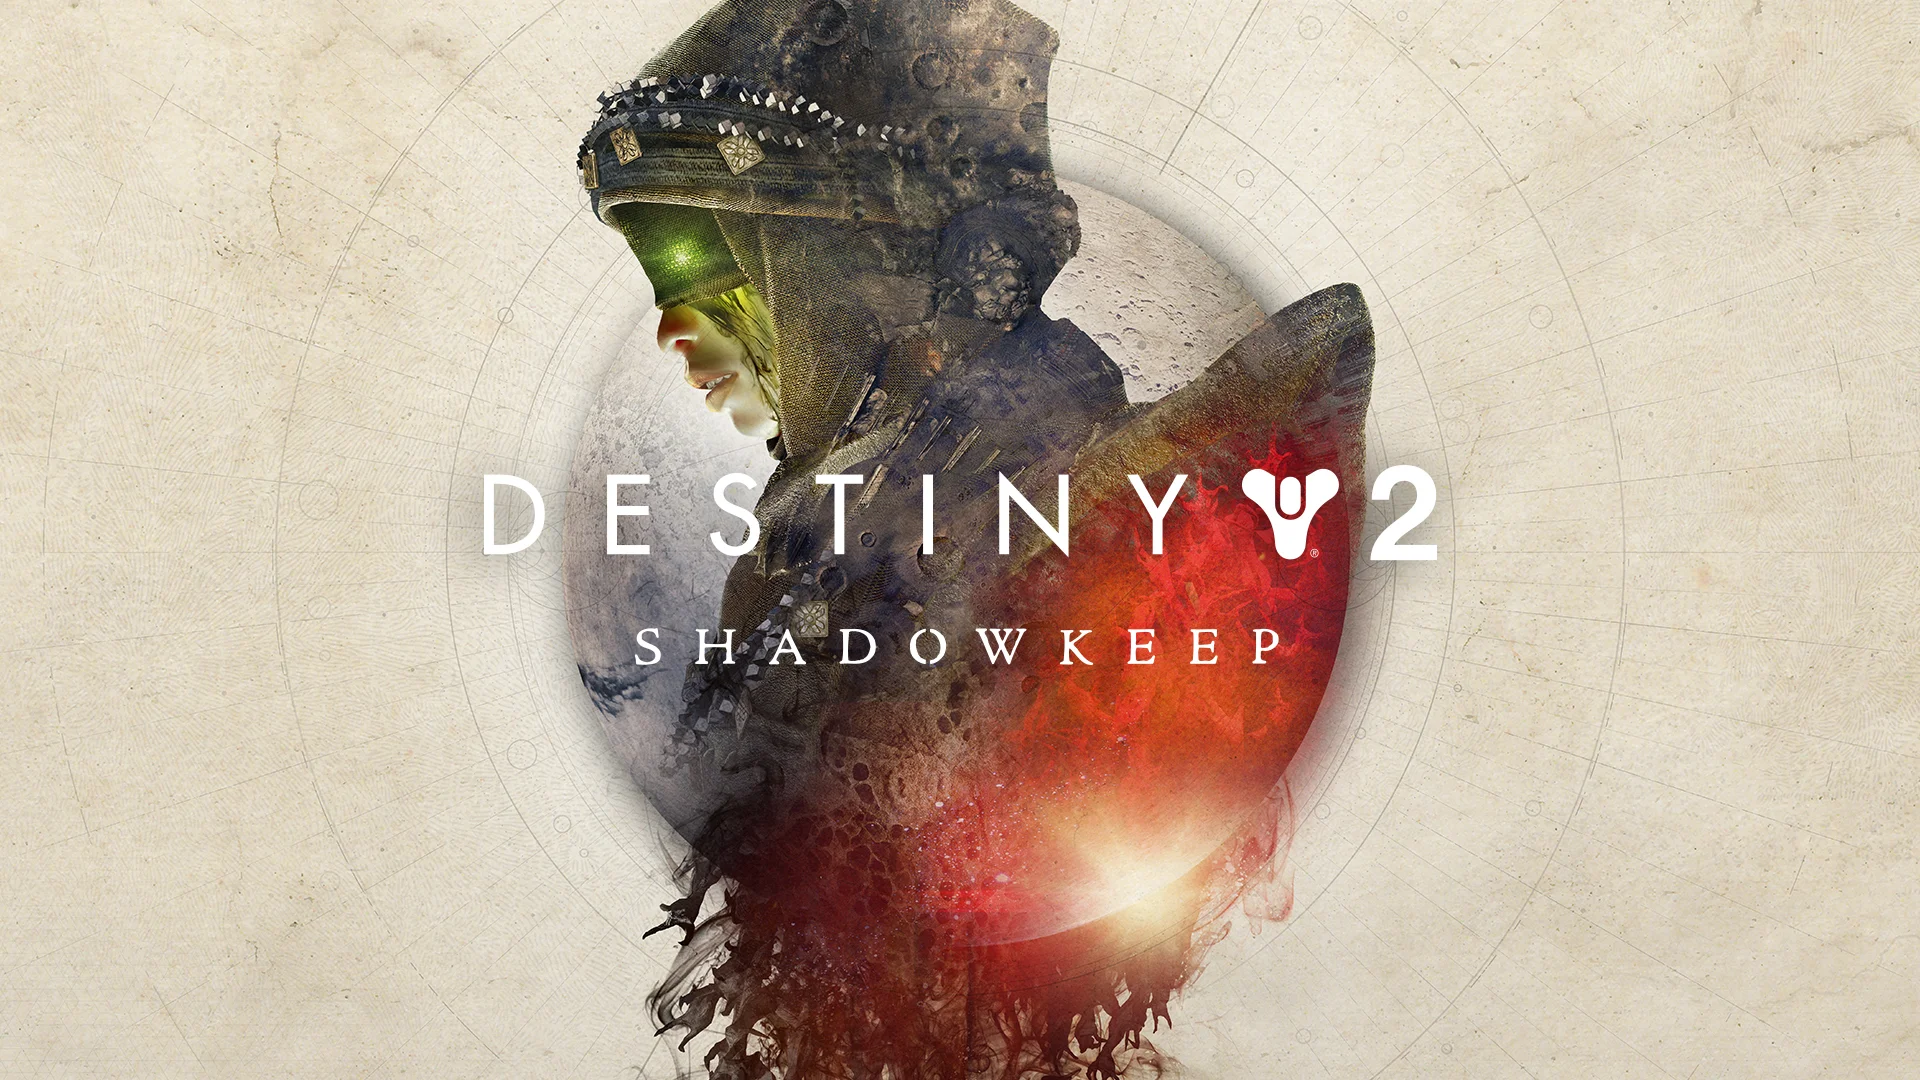 Уже 1 октября в продажу поступит Destiny 2: Shadowkeep — второе масштабное дополнение для многопользовательского шутера от Bungie. За прошедшие с запуска два года многое в игре изменилось, и сейчас ее уже сложно обвинить в недостатке контента. Shadowkeep же делает Destiny 2 еще больше — новая планета, новый рейд, новые активности ждут своих Стражей.